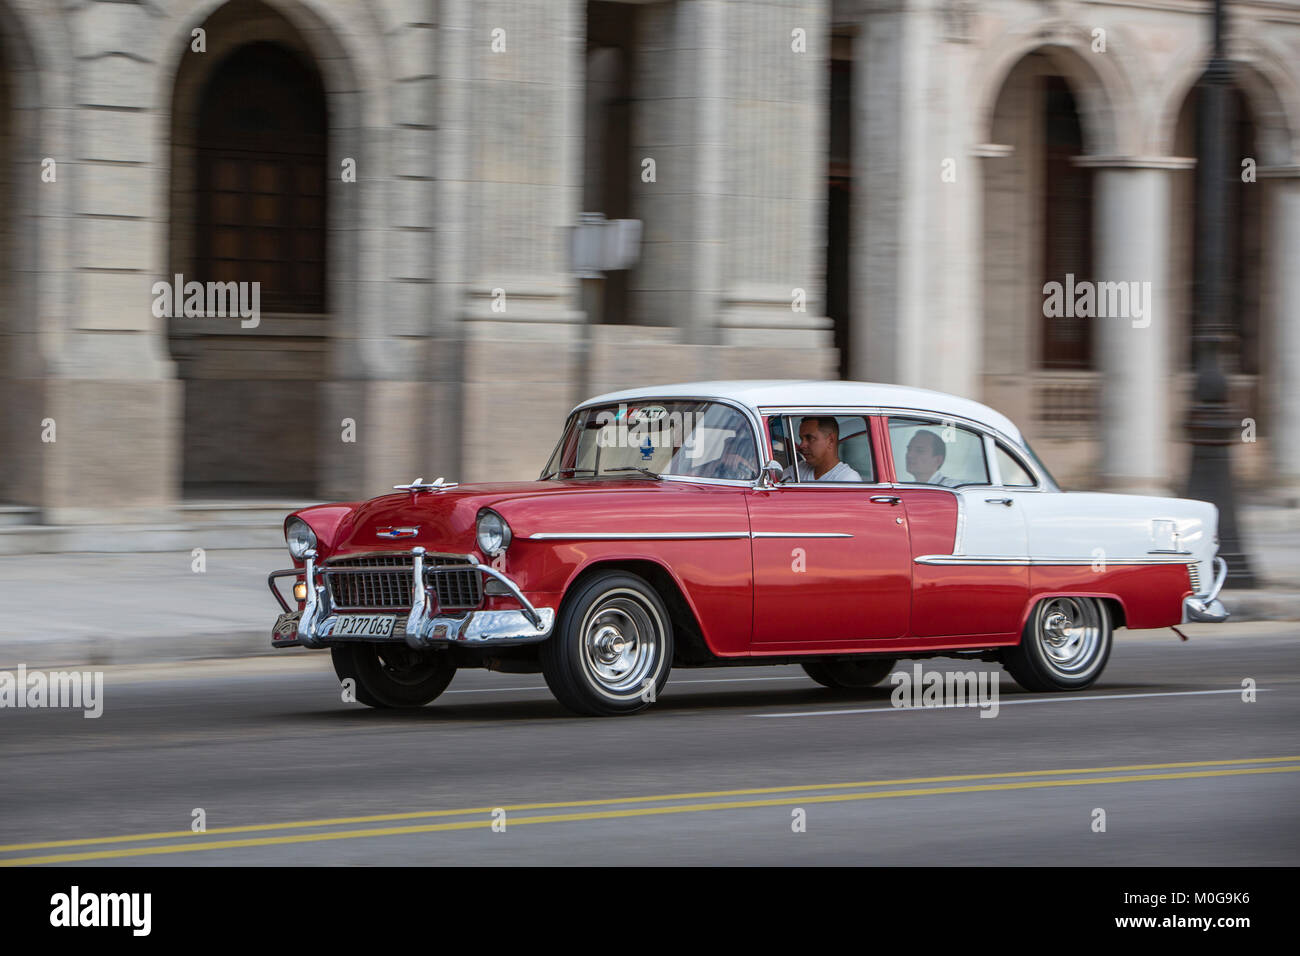 Klassische amerikanische Autos auf dem Malecon Streifen, Havanna, Kuba Stockfoto